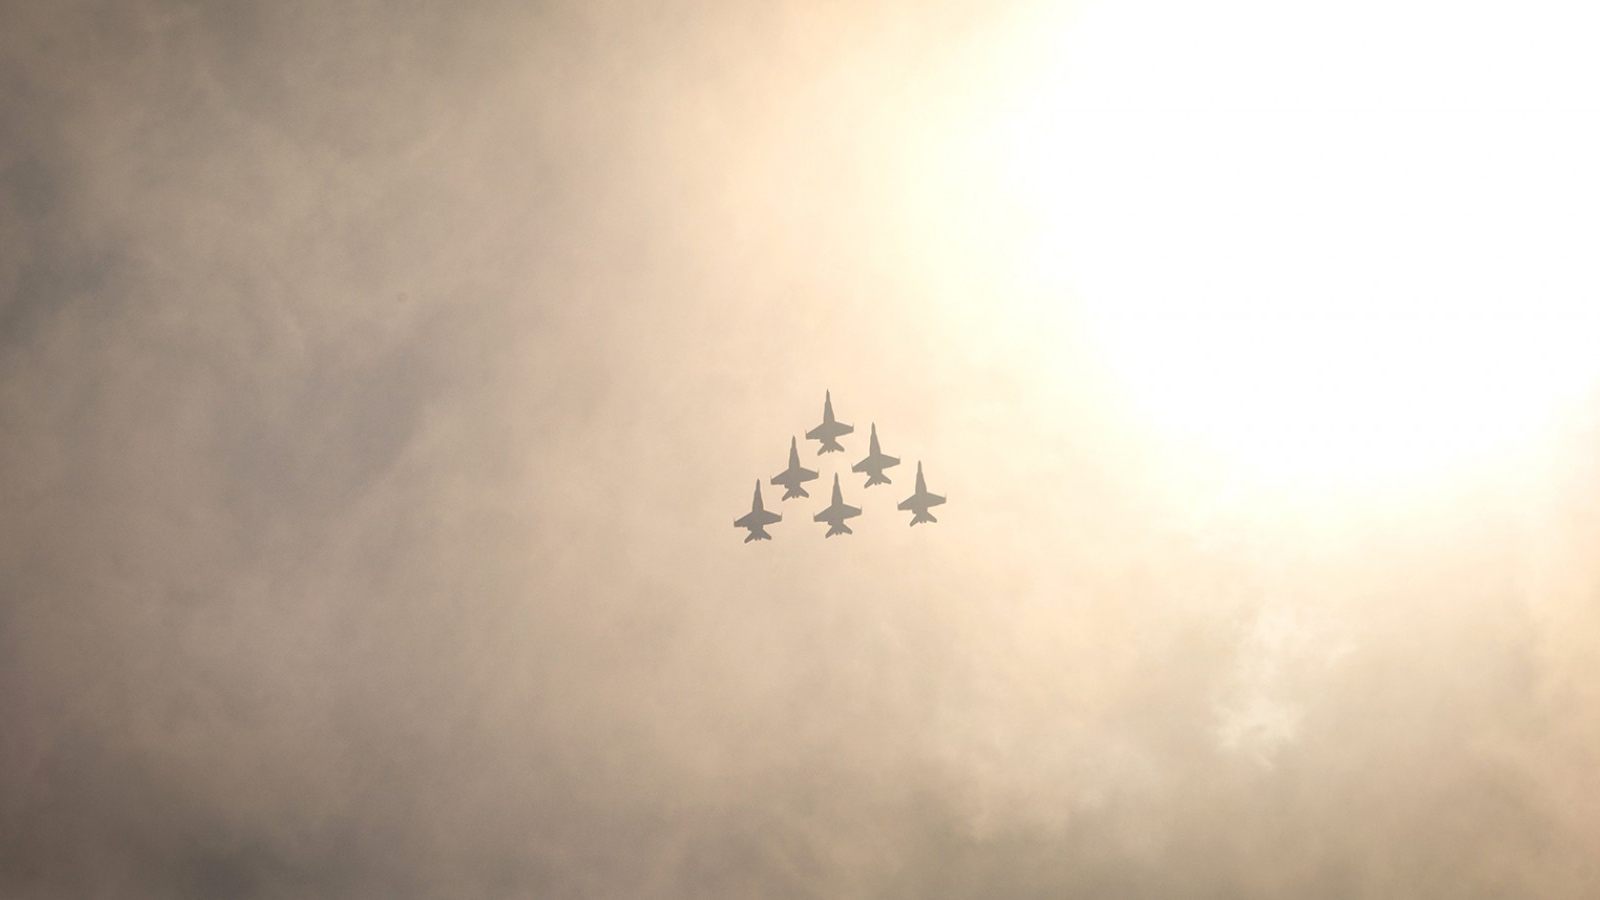 Скачать обои бесплатно Военные, Боинг F/a 18E/f Супер Хорнет, Реактивные Истребители картинка на рабочий стол ПК